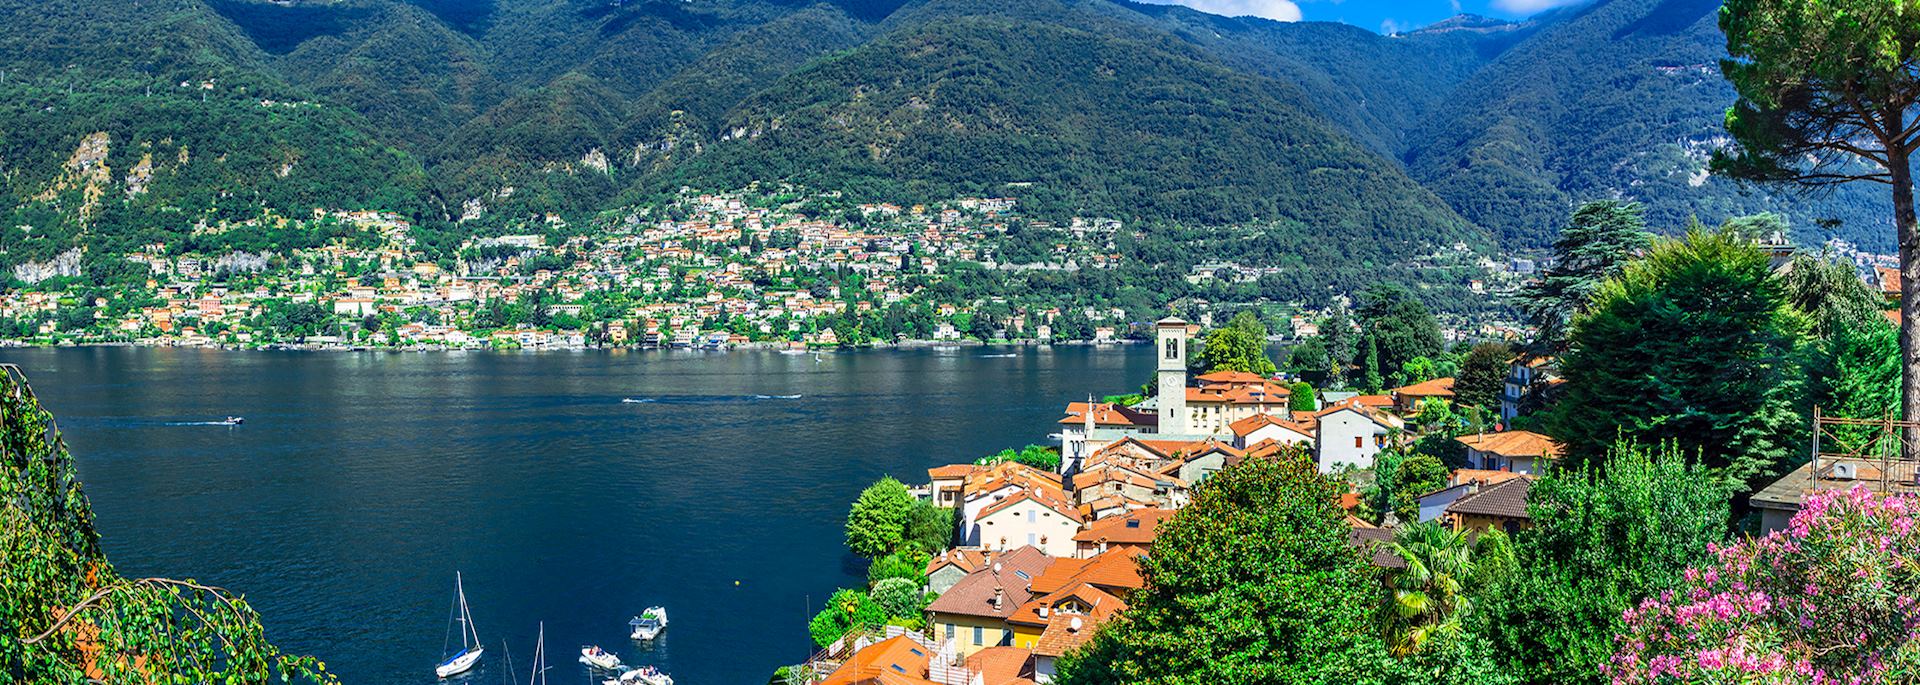 Belvio, Lake Como